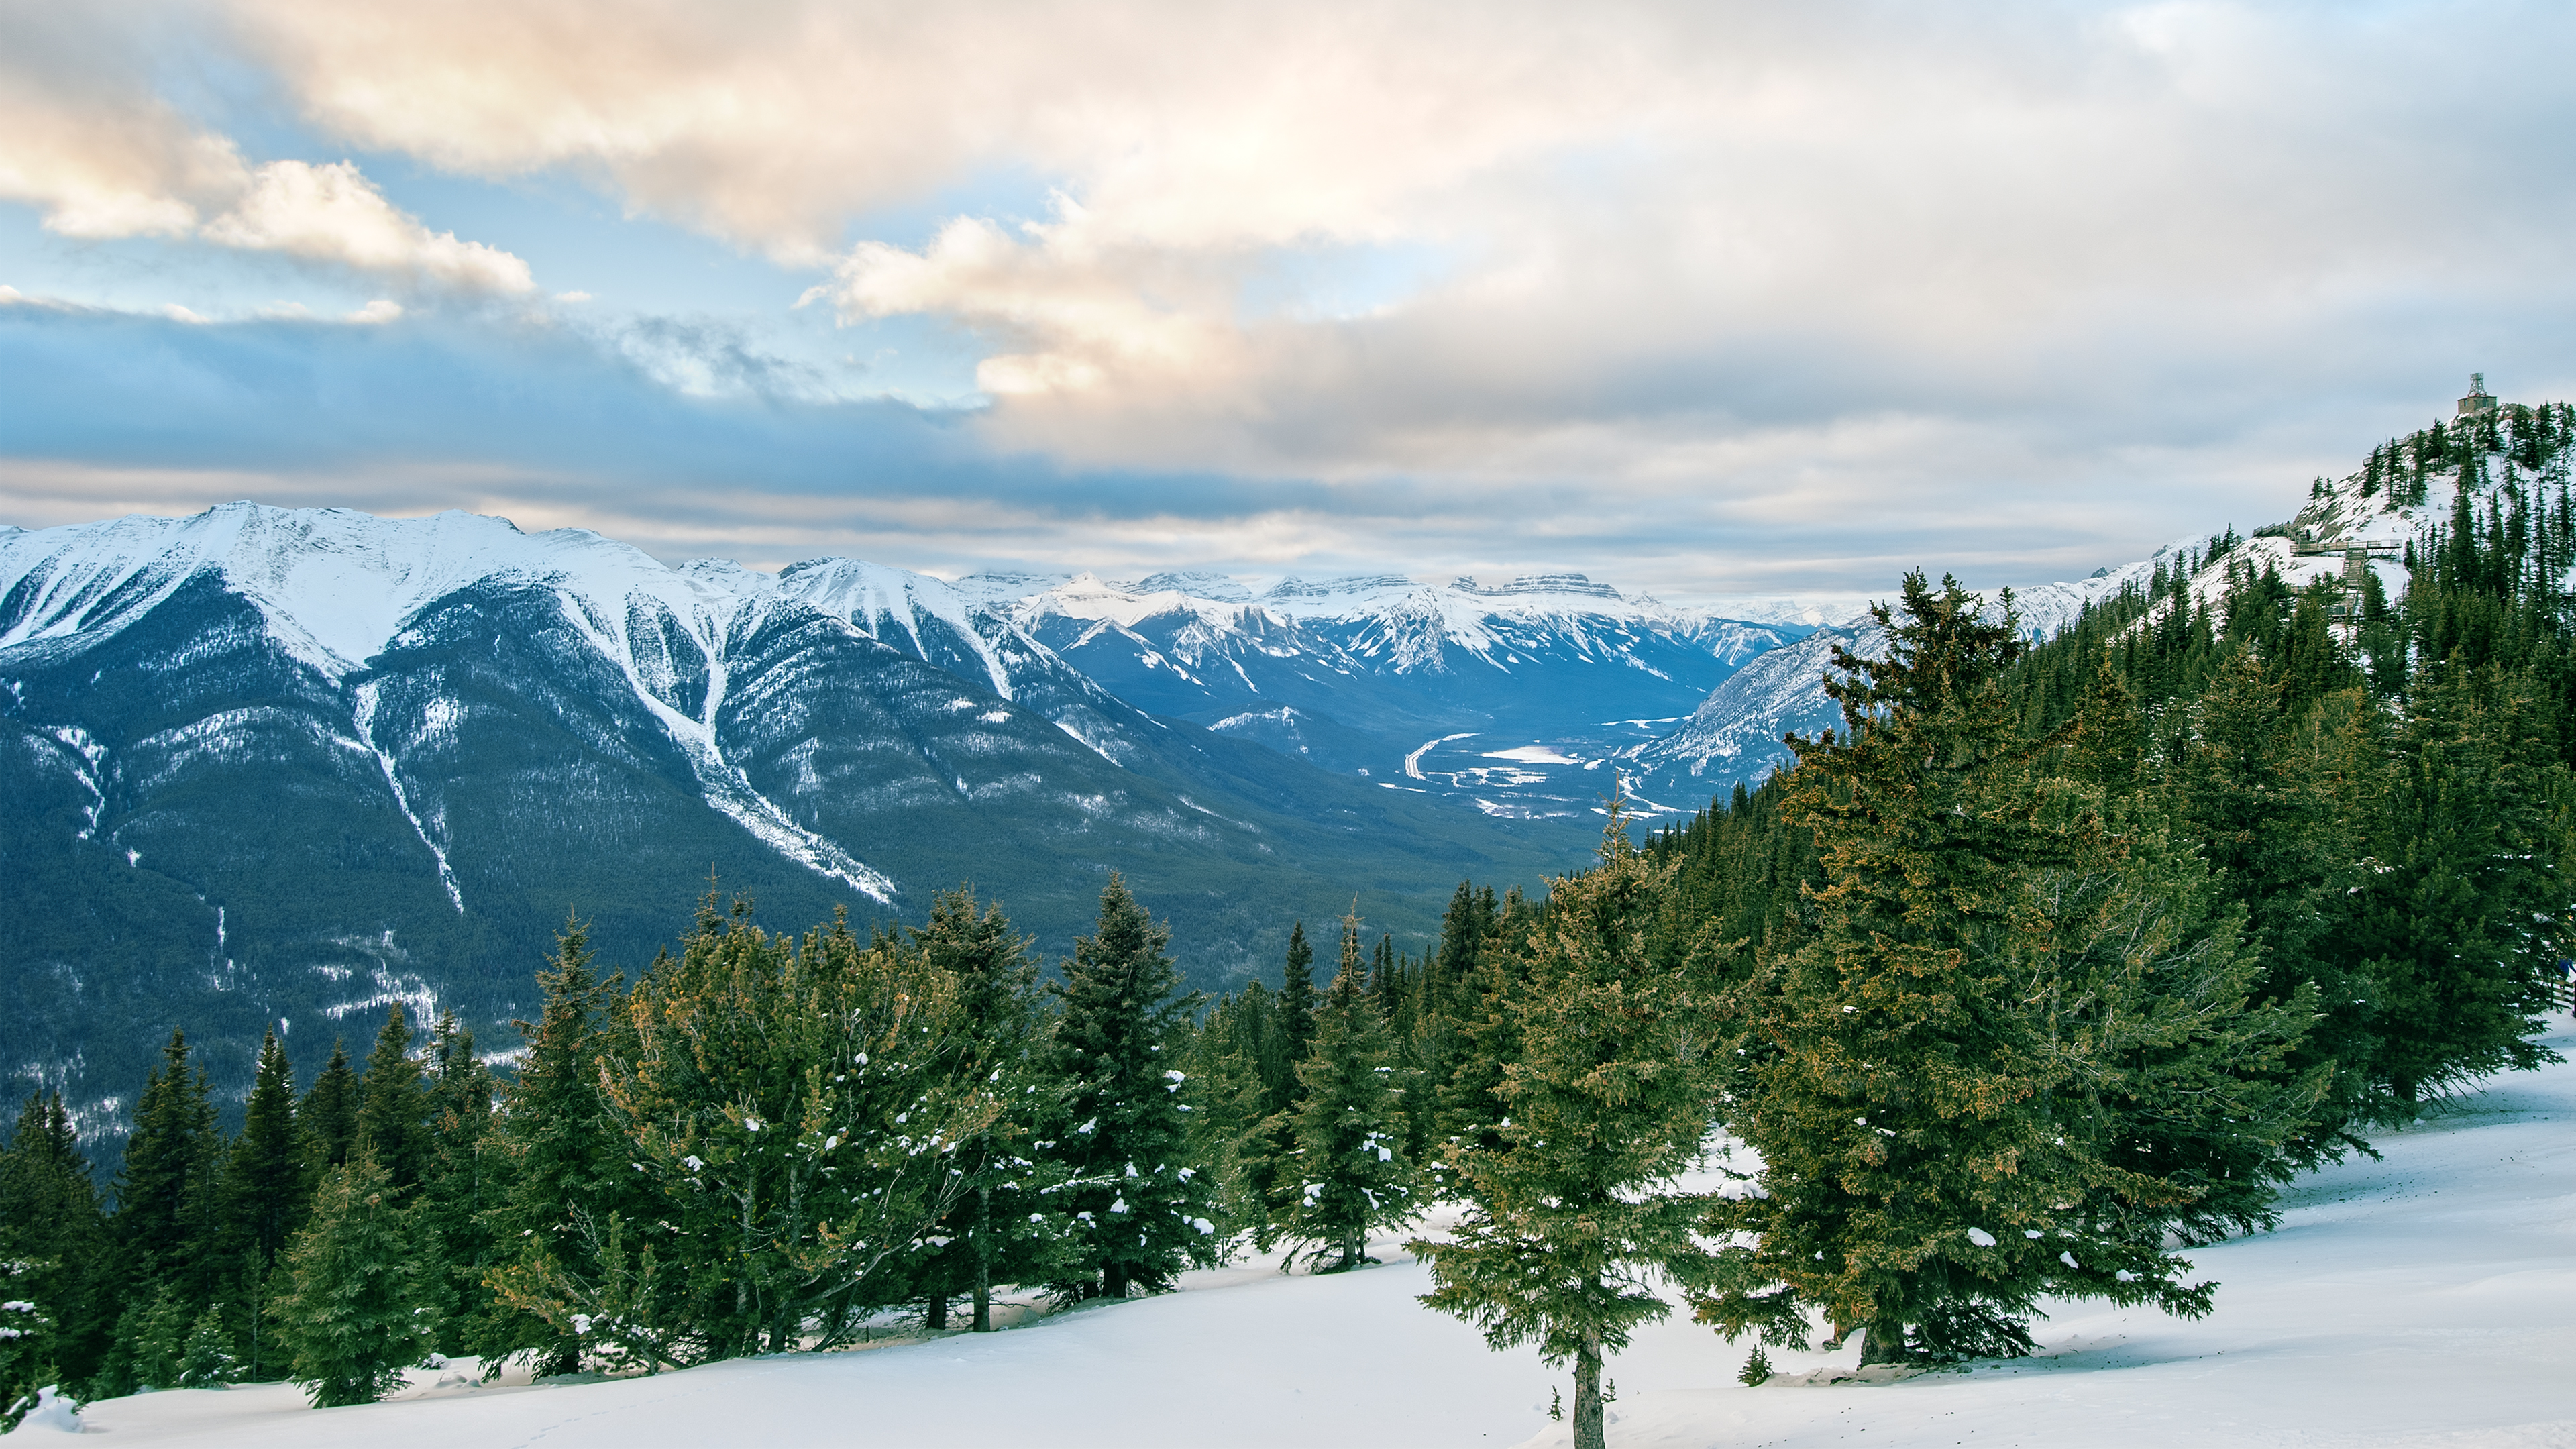 Скачать обои бесплатно Зима, Природа, Снег, Гора, Лес, Долина, Ландшафт, Земля/природа картинка на рабочий стол ПК